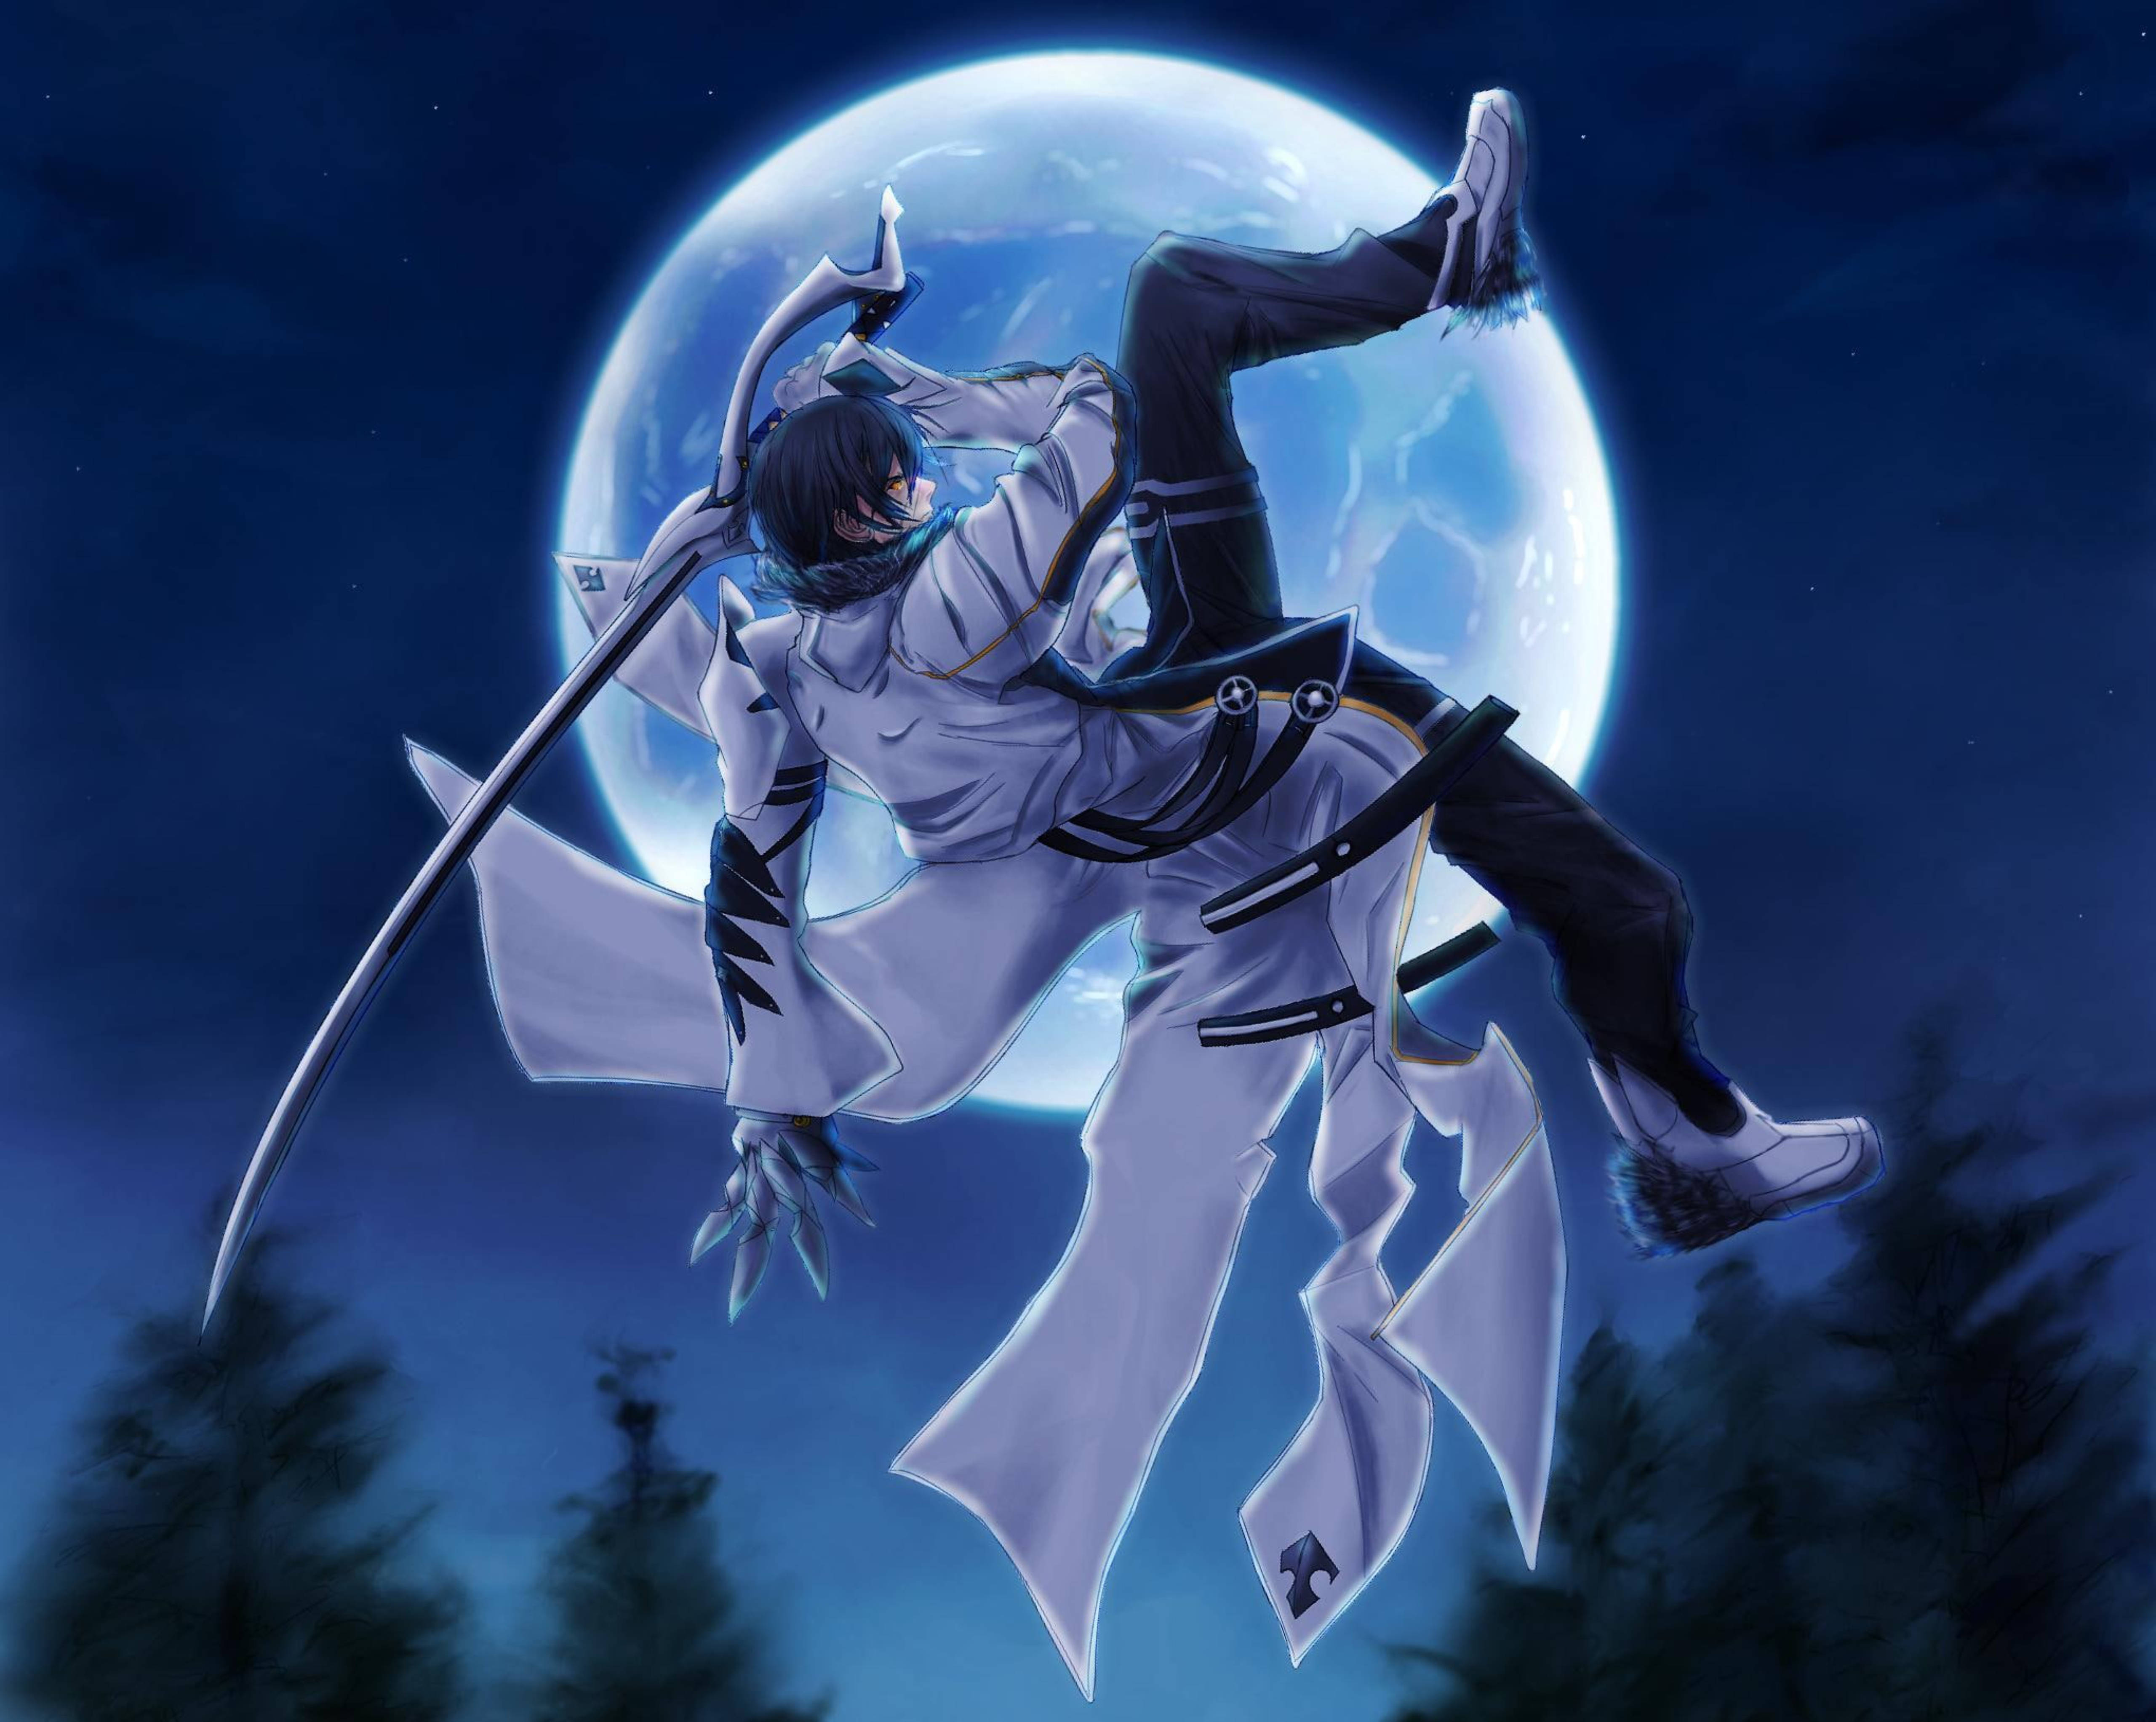 Moon sword. Теневой мечник Рэйвен Кисараги.